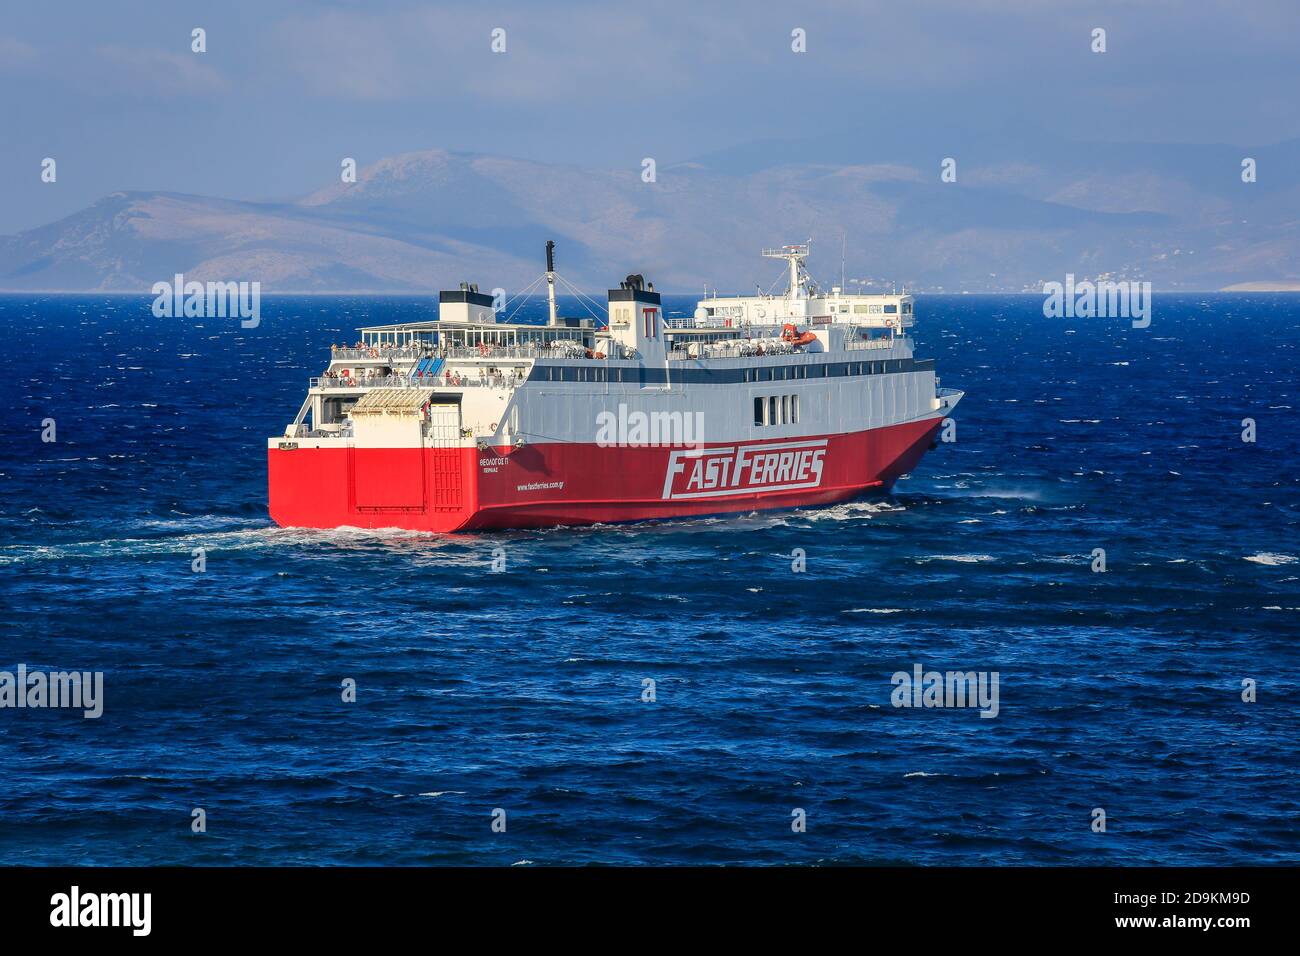 Rafina, Attica, Grecia - il traghetto Fast Ferries collega il porto di Rafina alle isole Cicladi. Foto Stock